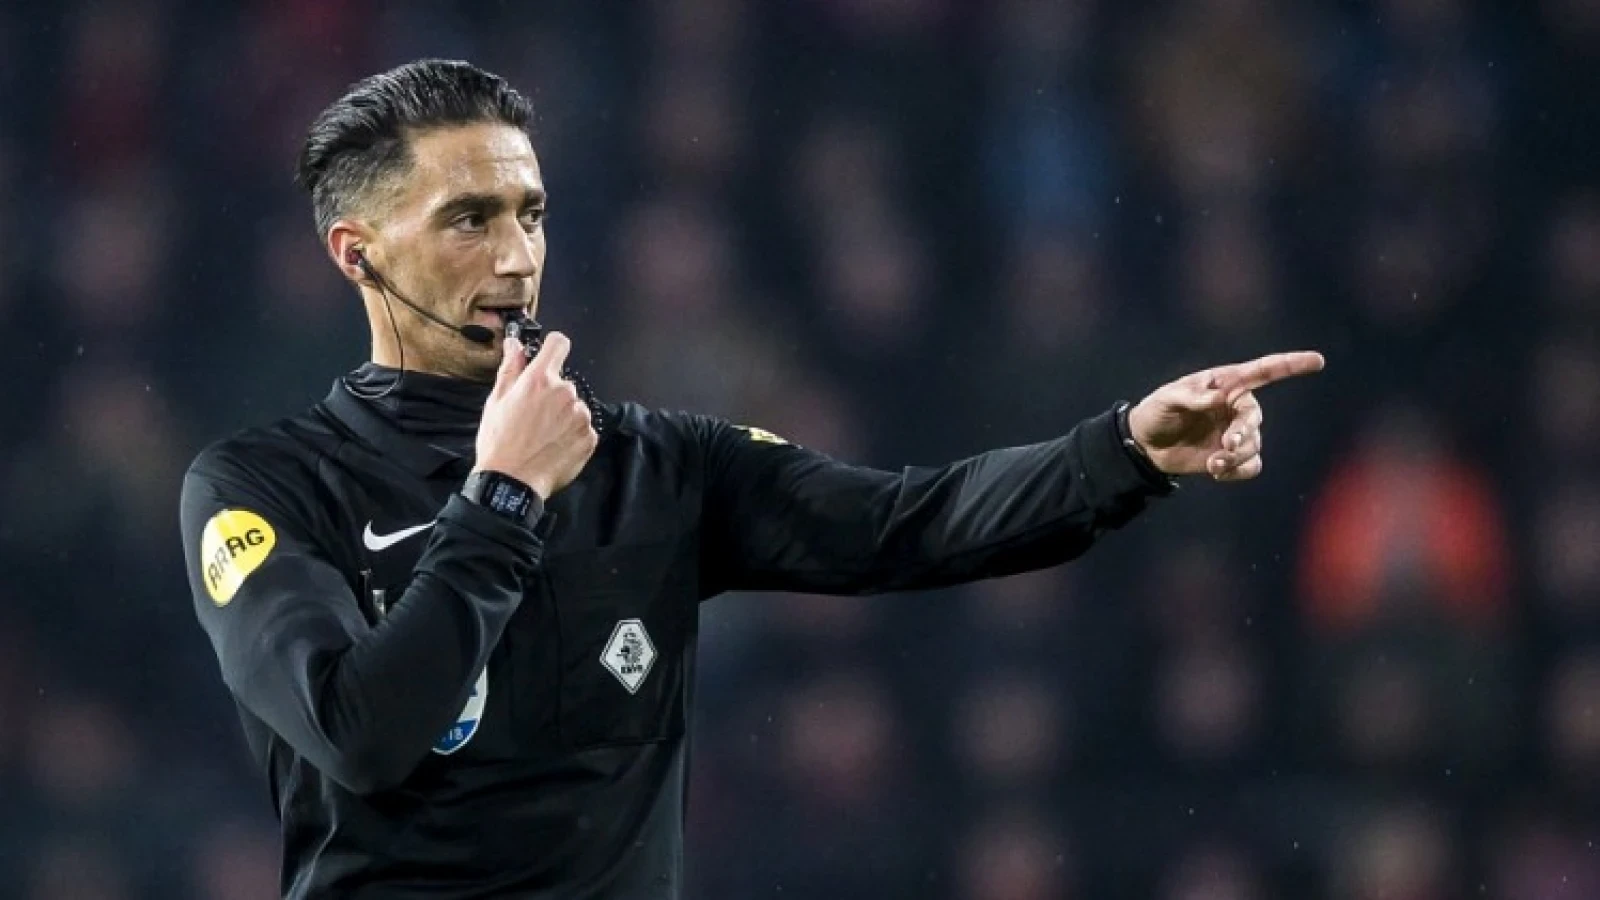 KNVB maakt scheidsrechter bekend voor thuiswedstrijd tegen Excelsior